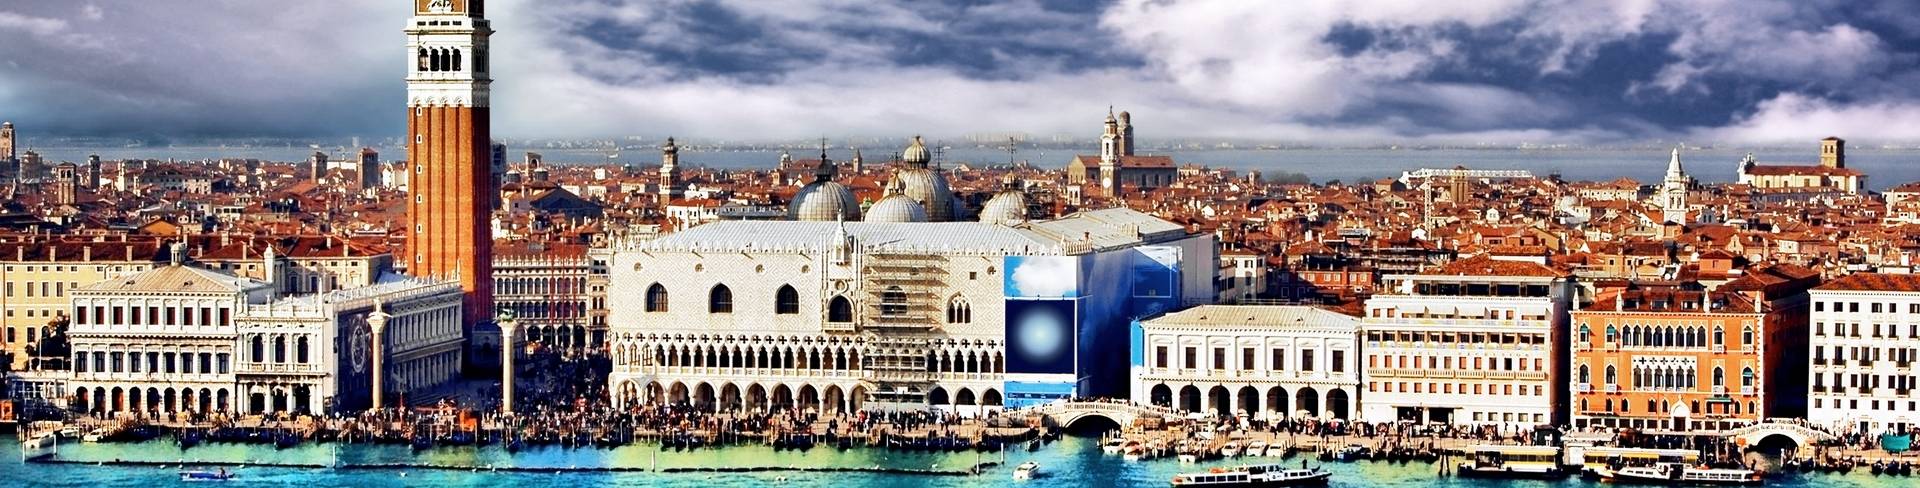 Венеция - город в Италии